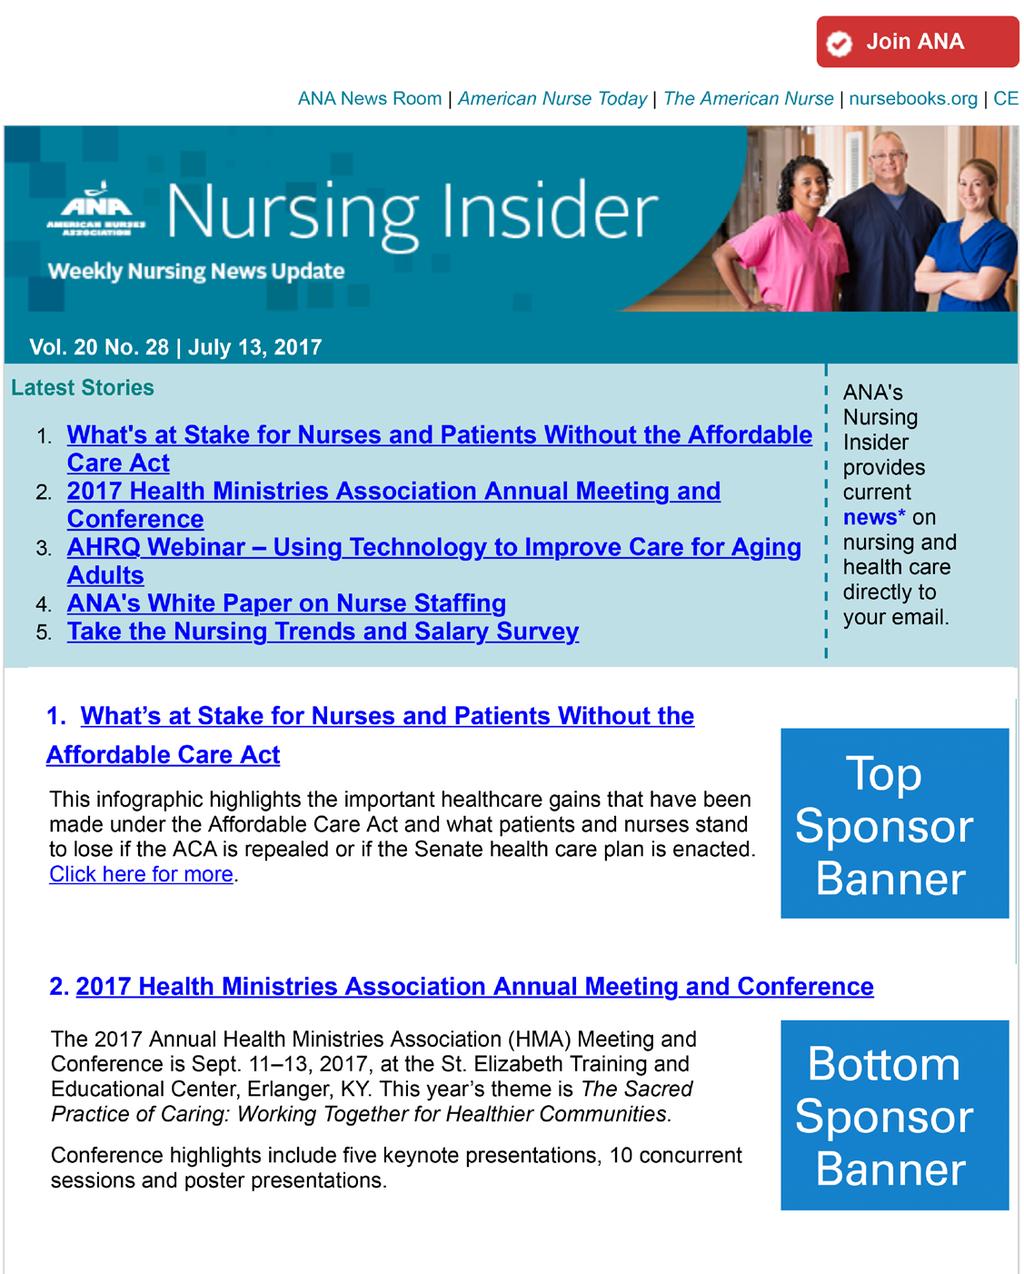 63% of Nursing Insider readers read it every week or every other week.